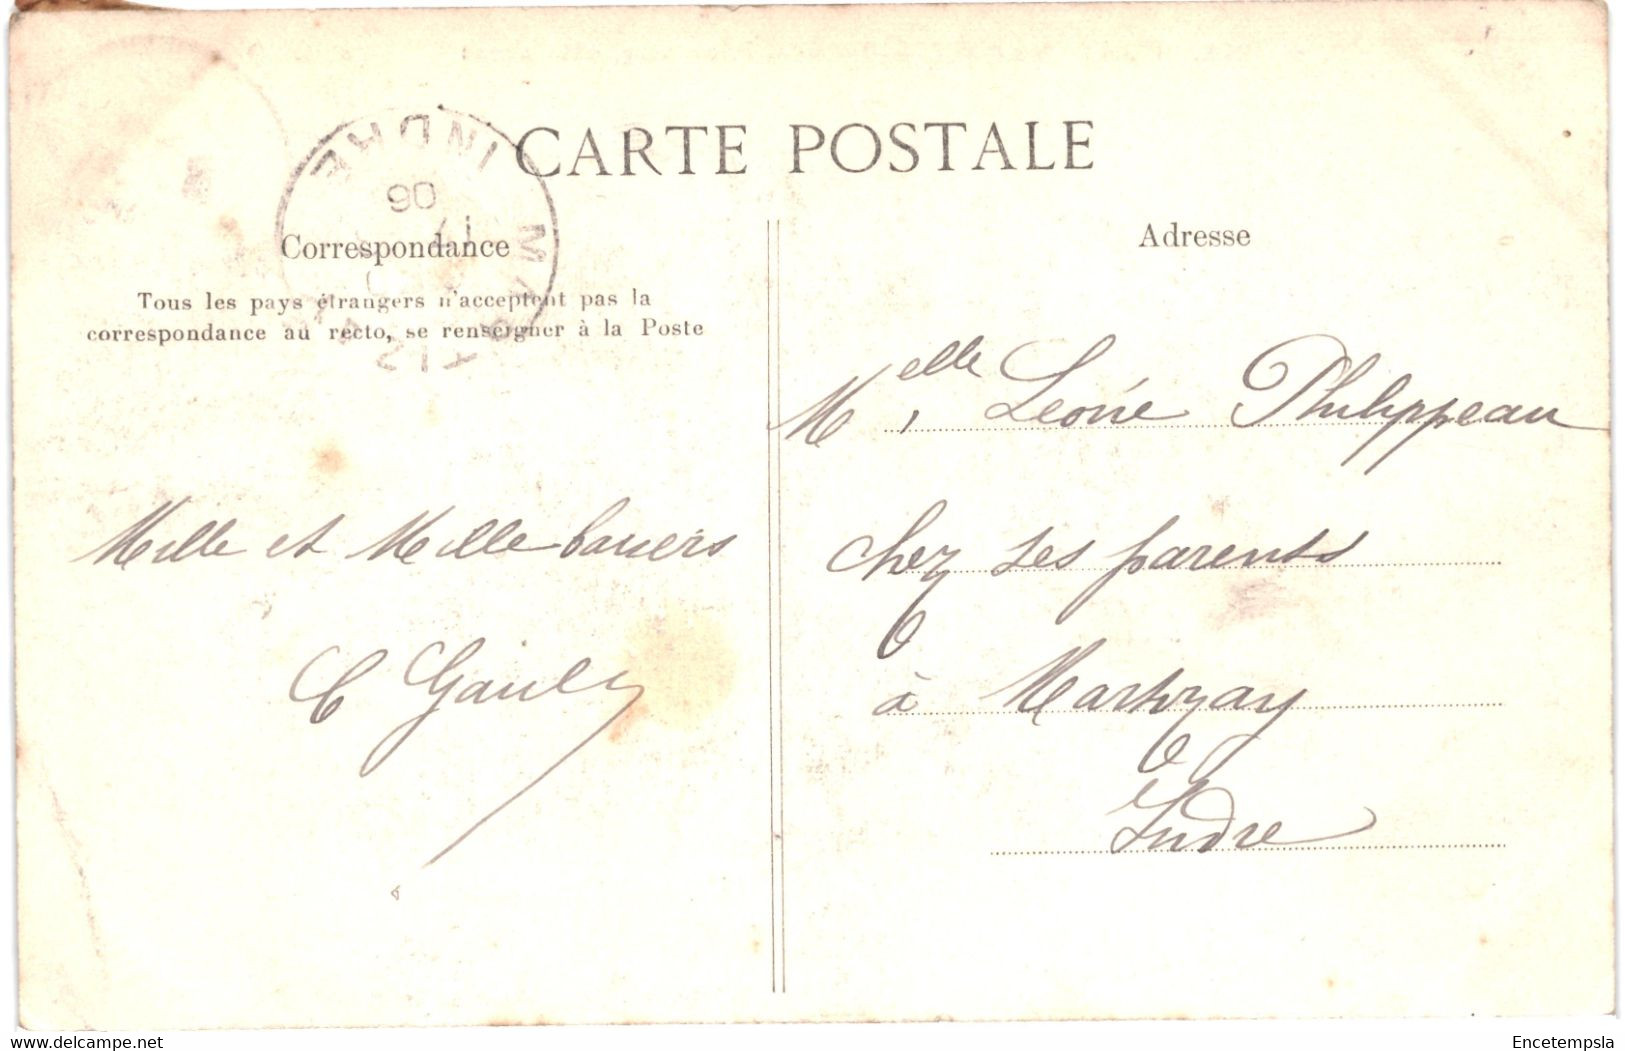 CPA Carte Postale France Fontenay Sous Bois Panorama Côté Ouest 1906 VM60904 - Fontenay Sous Bois